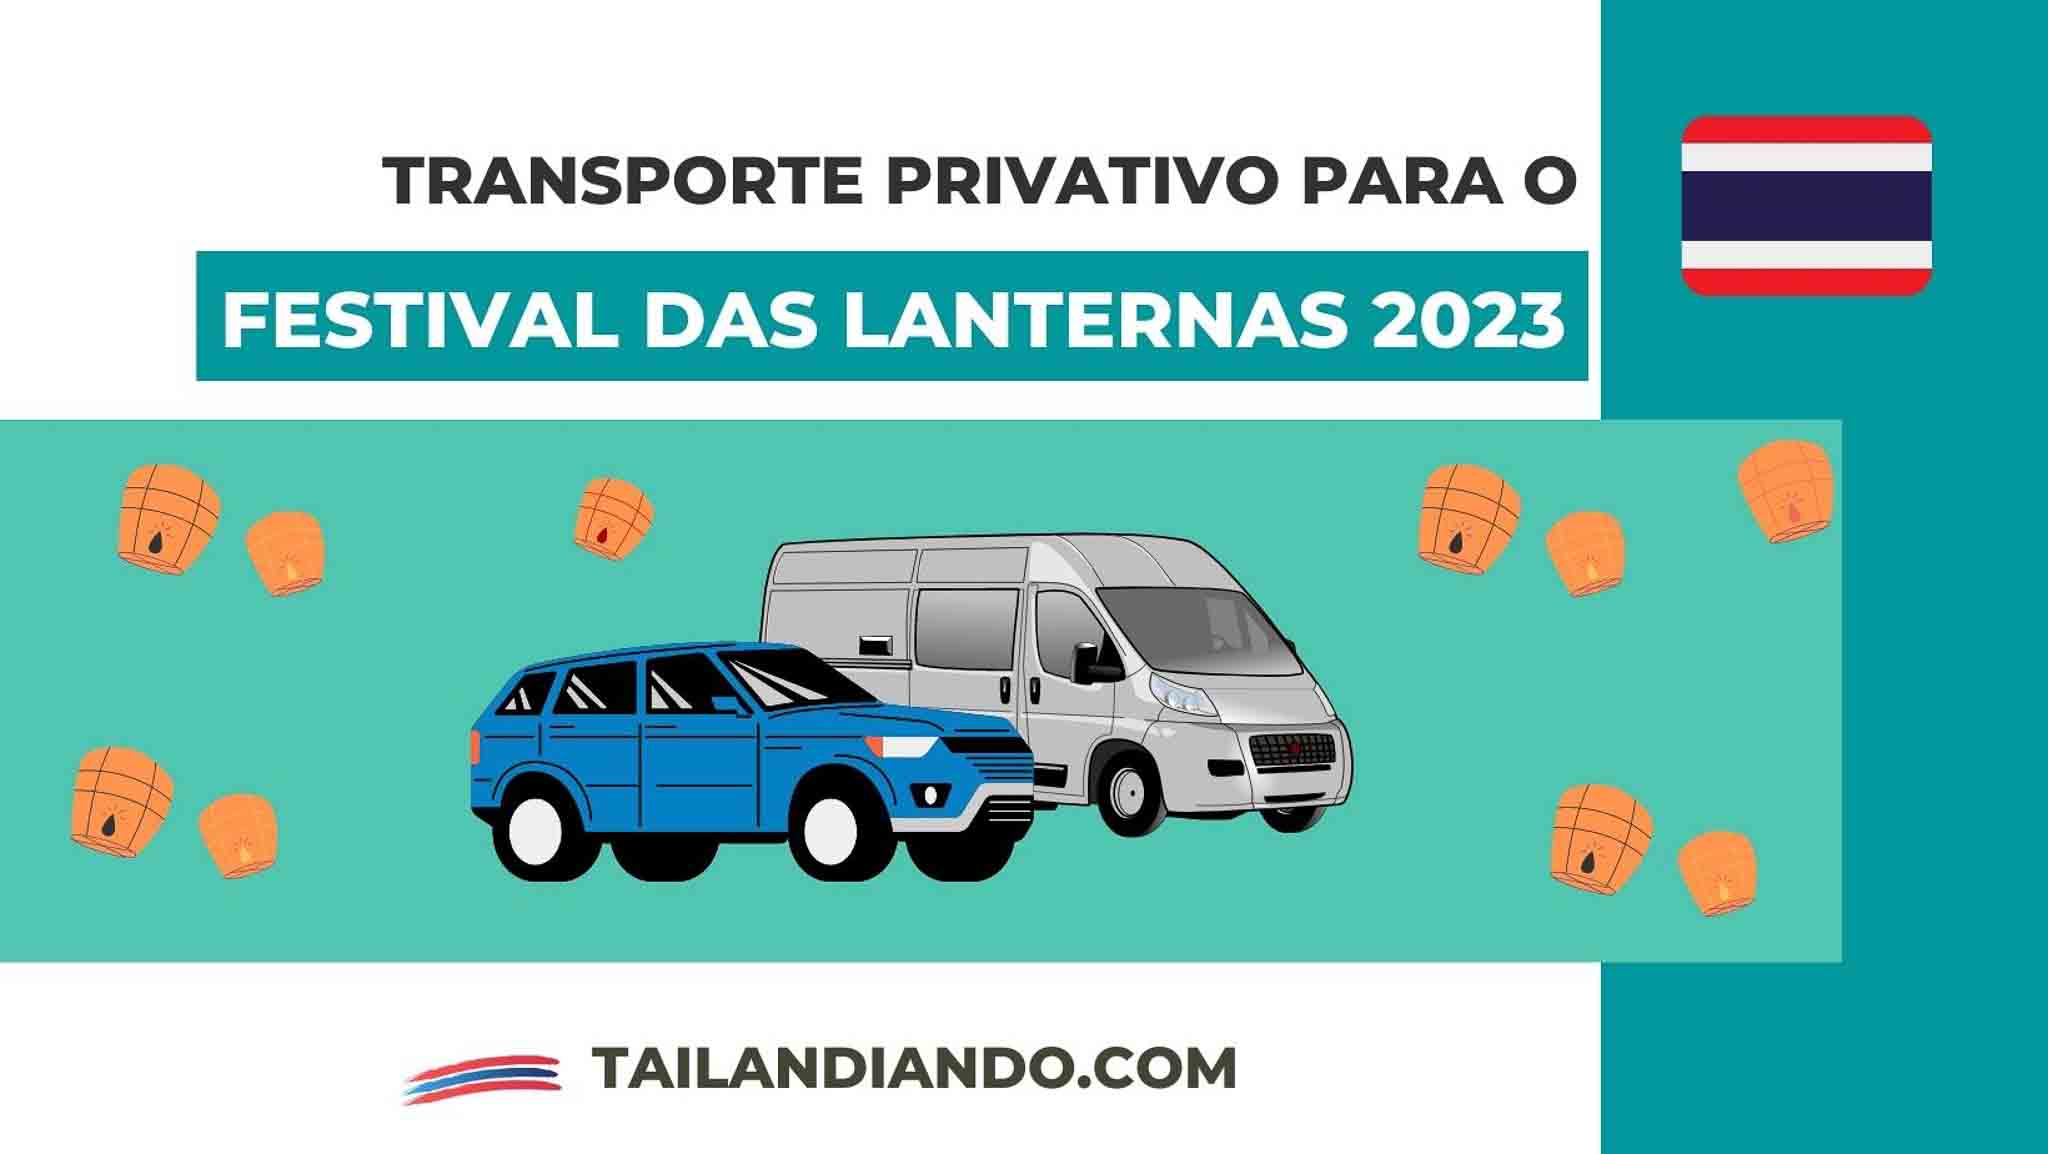 Transporte privativo para o CAD Festival das Lanternas 2023